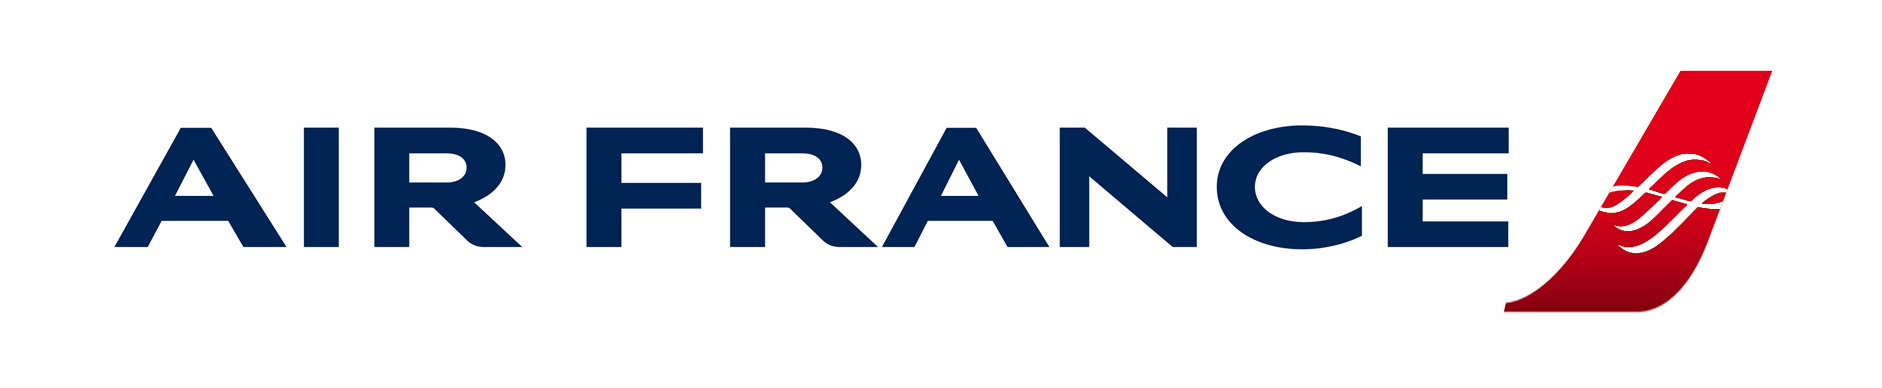 Air France Logo a.jpg